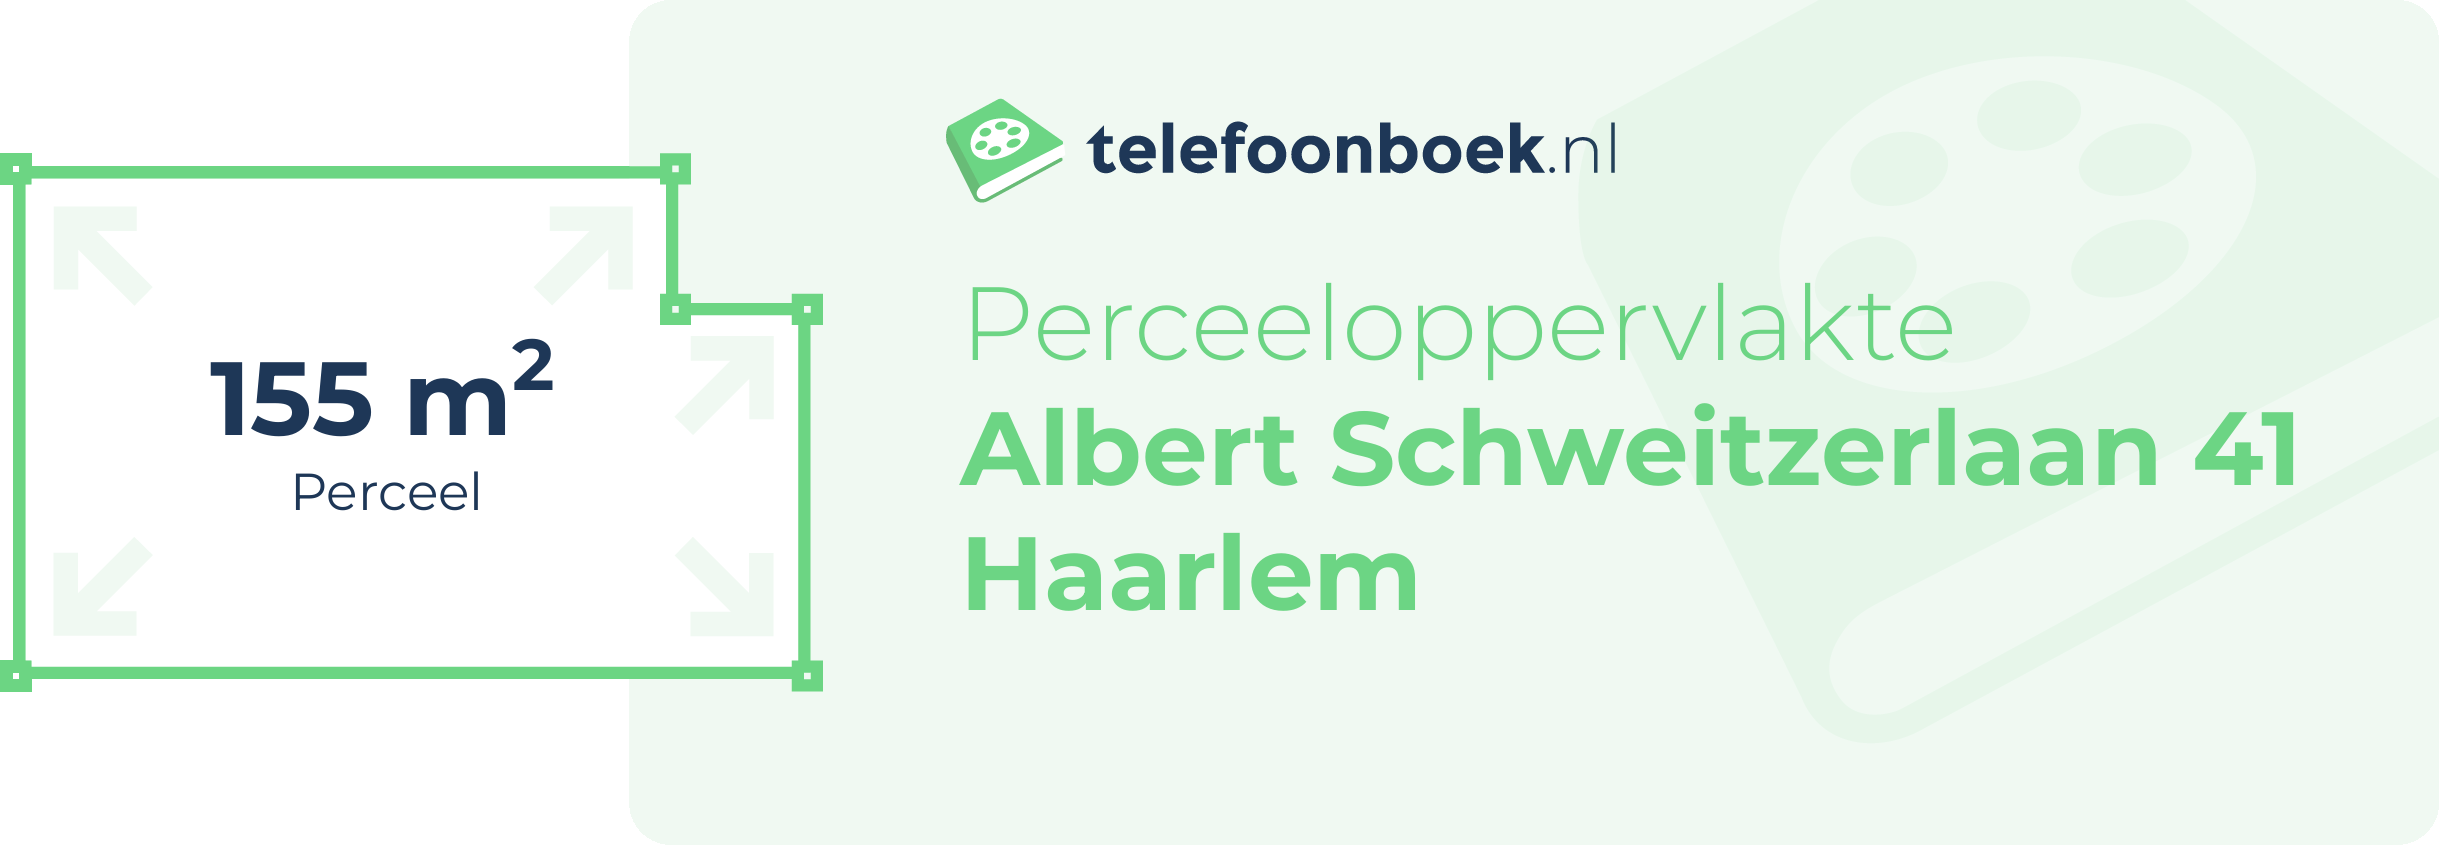 Perceeloppervlakte Albert Schweitzerlaan 41 Haarlem